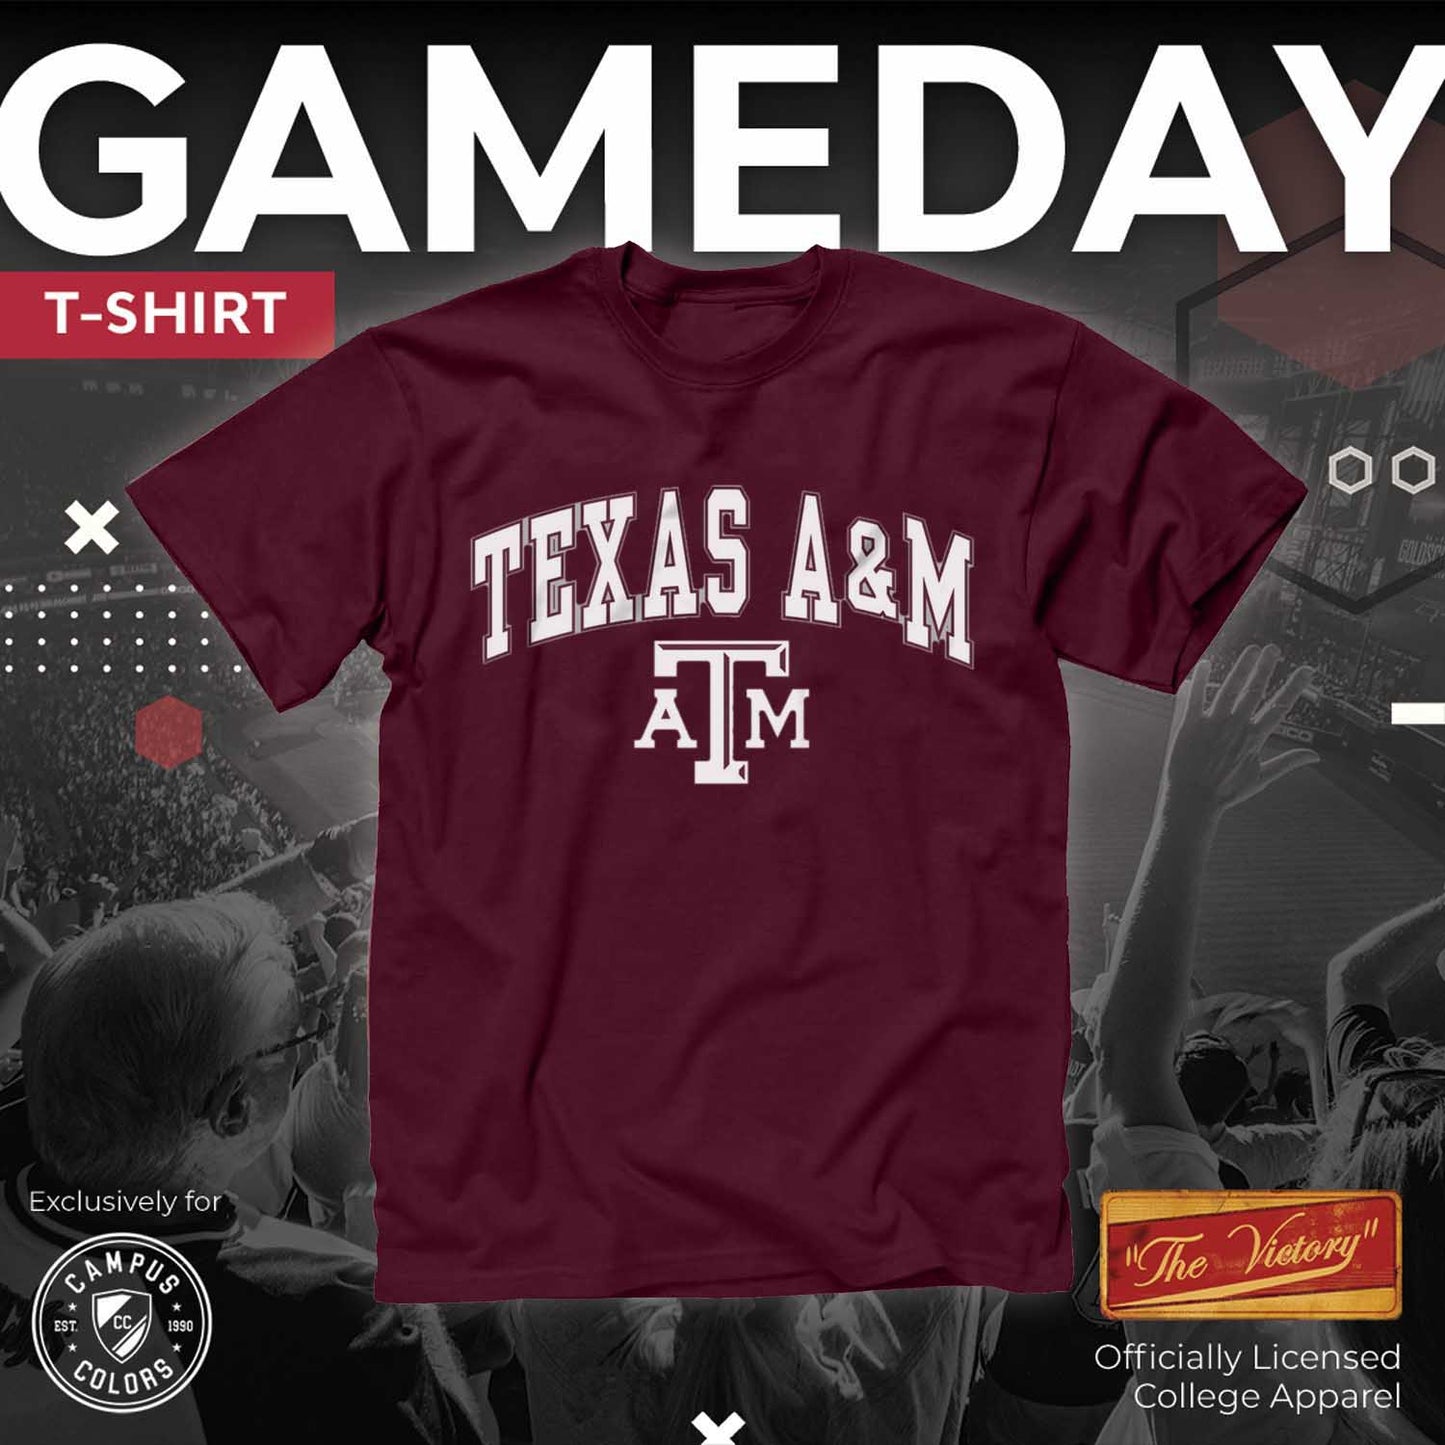 Texas A&M Aggies  Adult Arch N Logo T-Shirt - Maroon